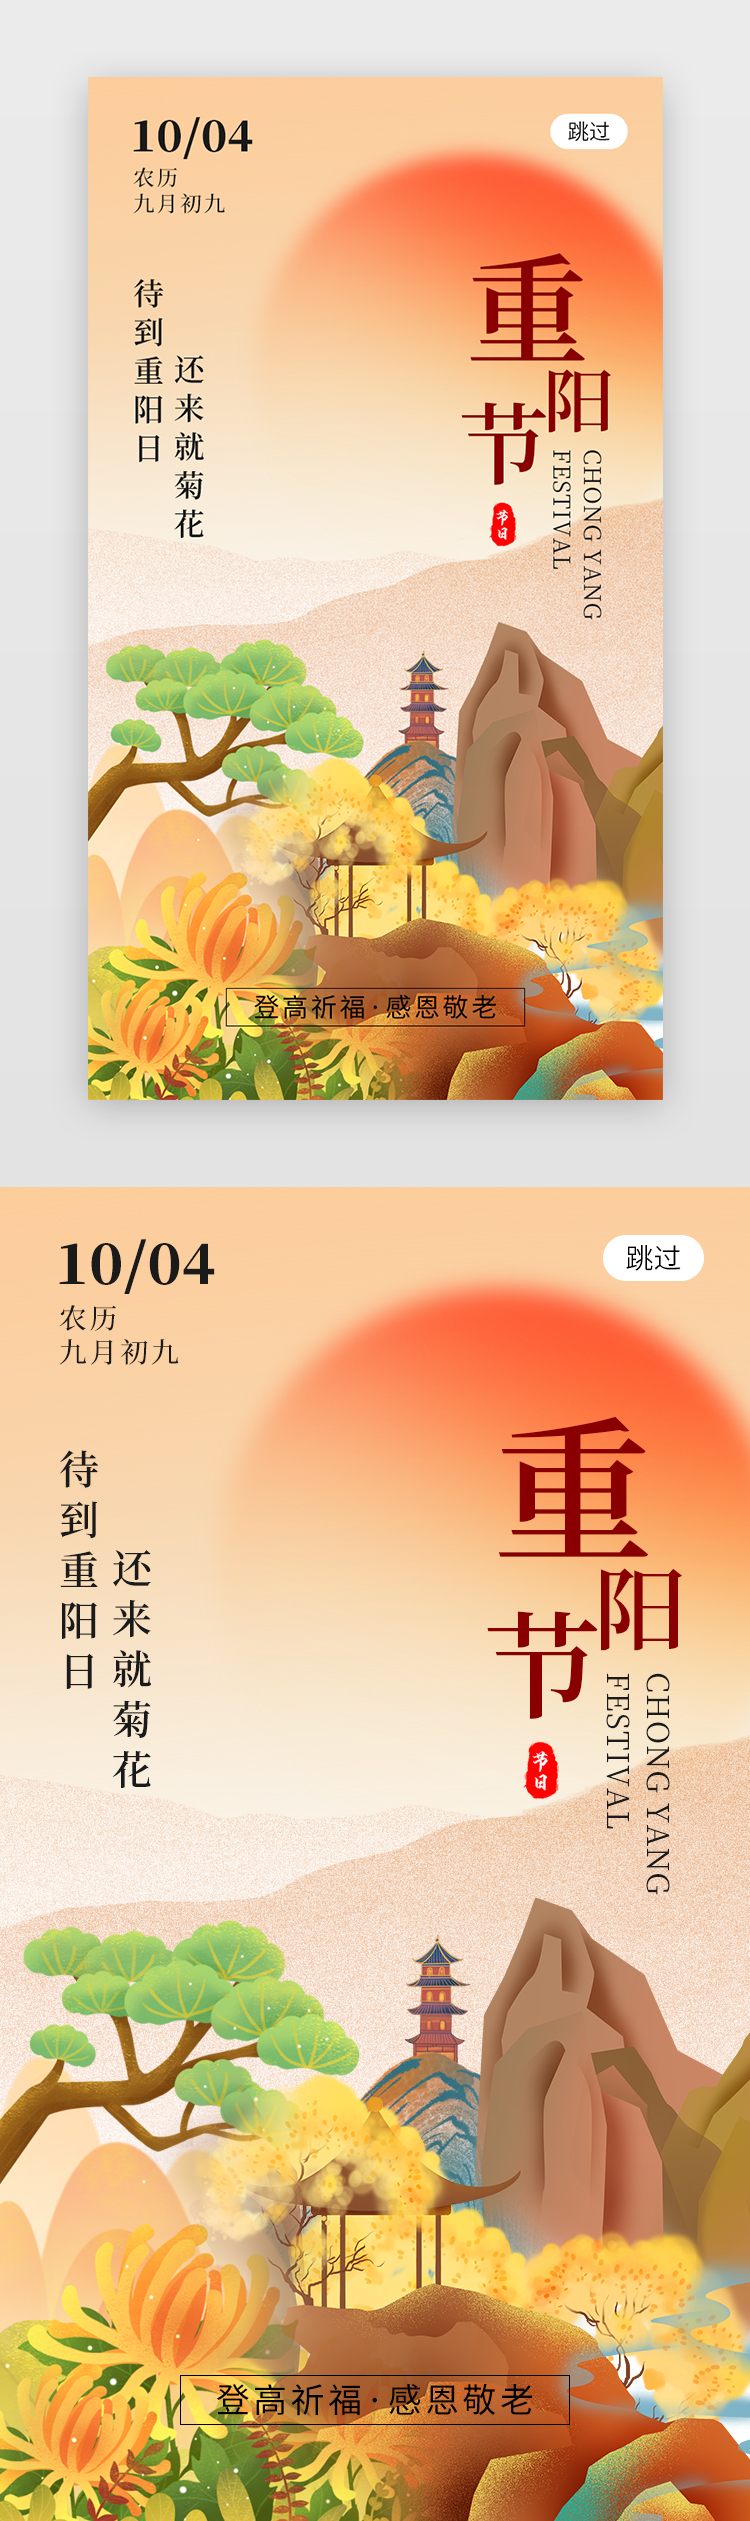 九九重阳节app闪屏创意橙黄色高山图片